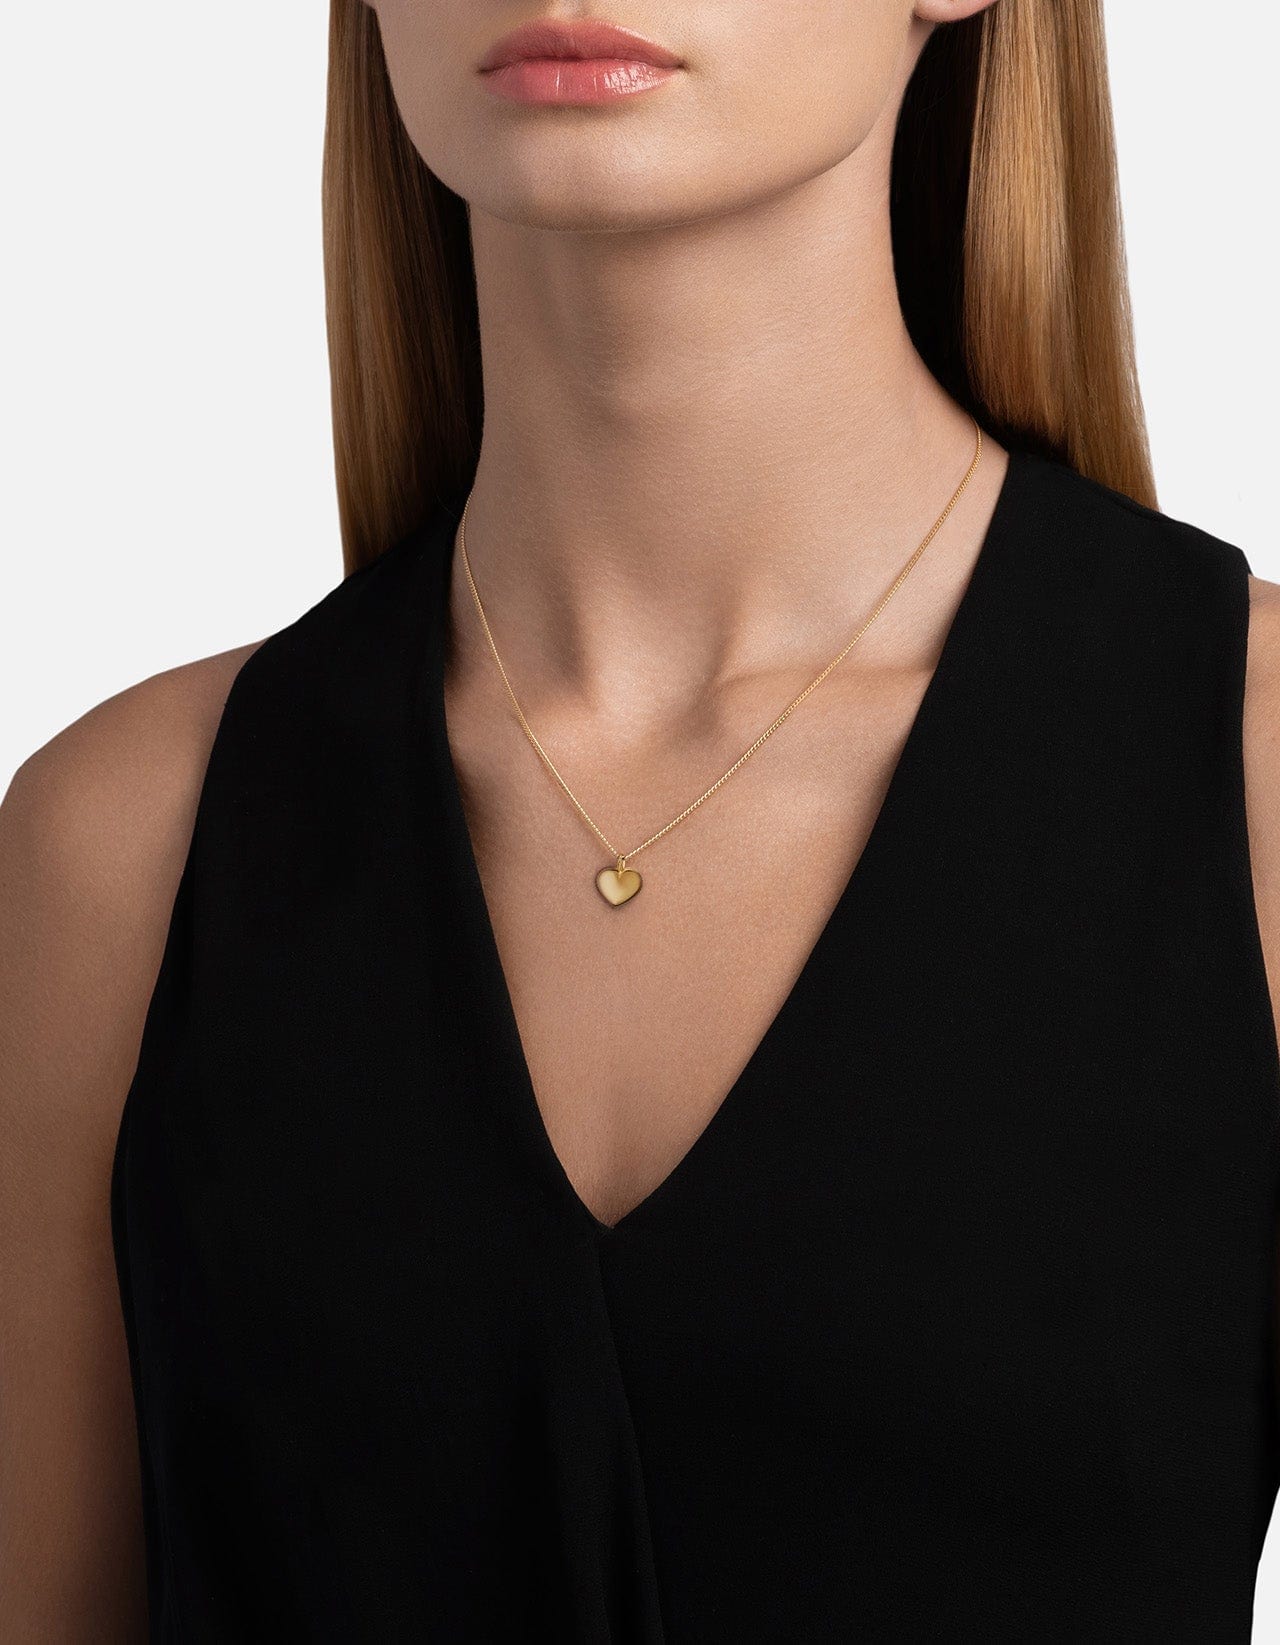 Carino Heart Necklace, Gold Vermeil | Women\'s Necklaces | Miansai